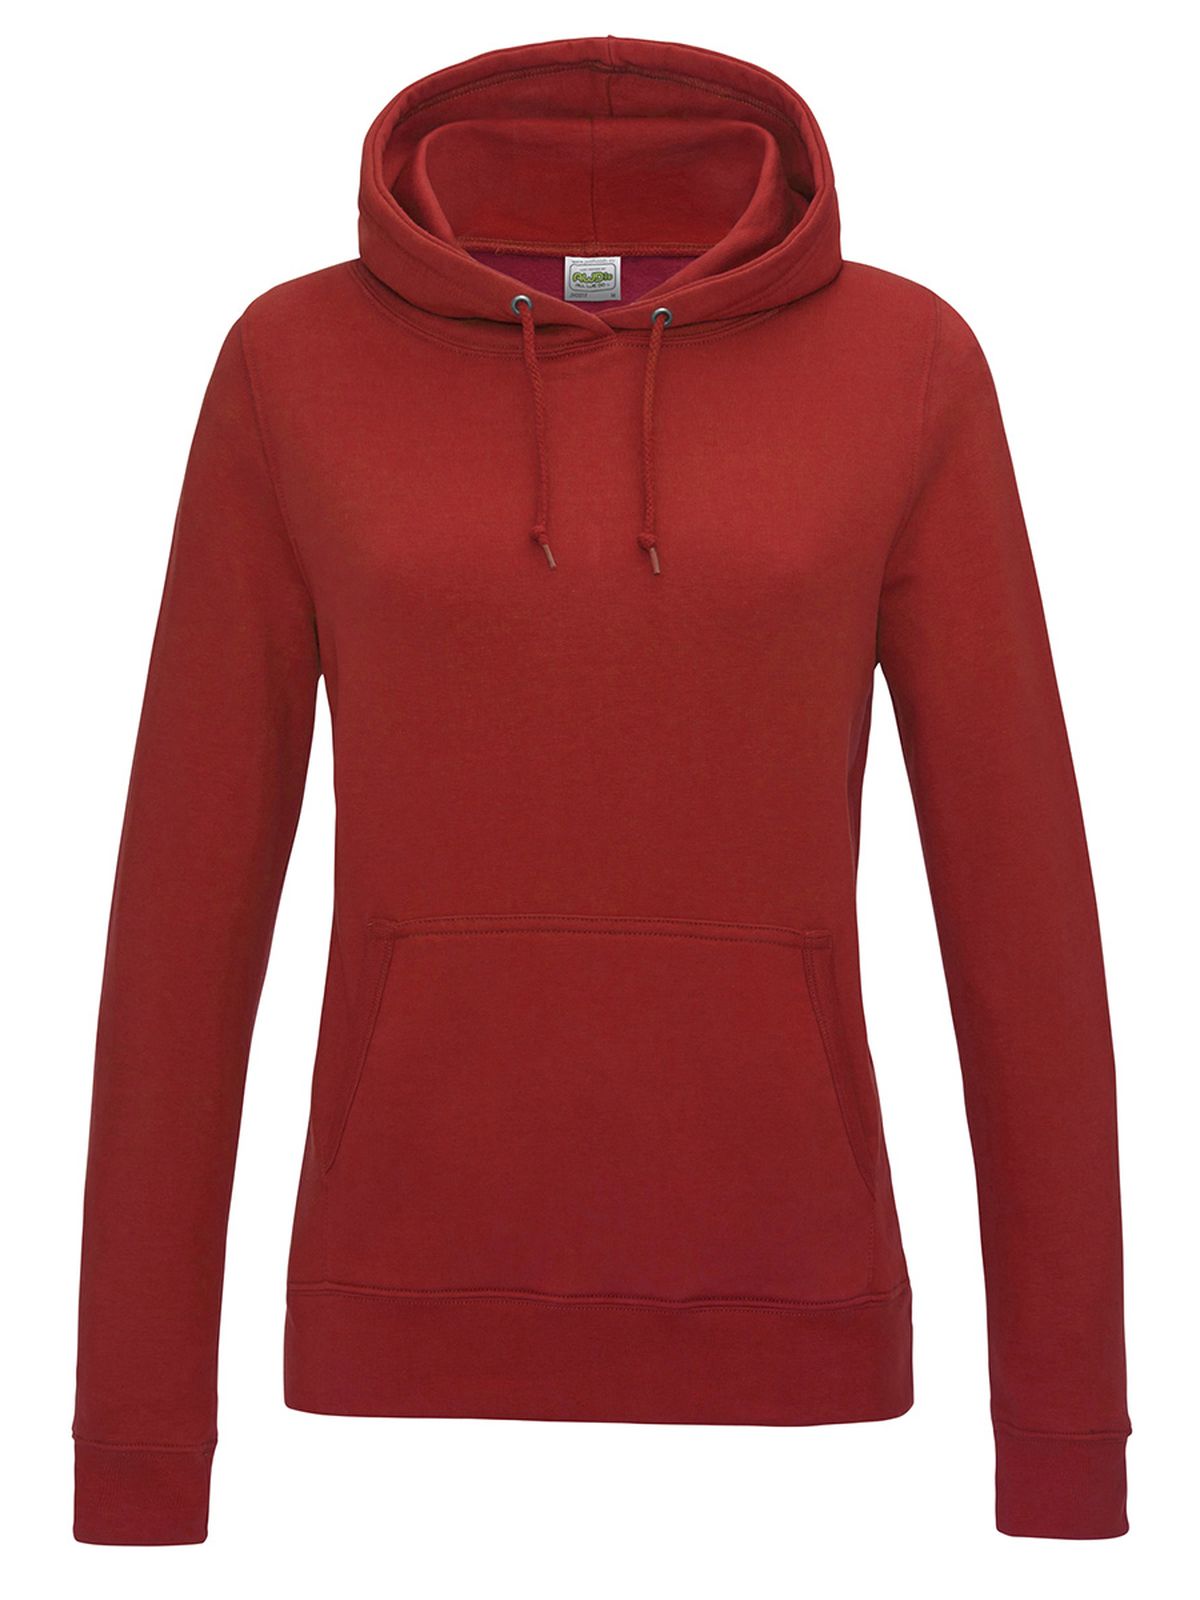 girlie-college-hoodie-fire-red.webp